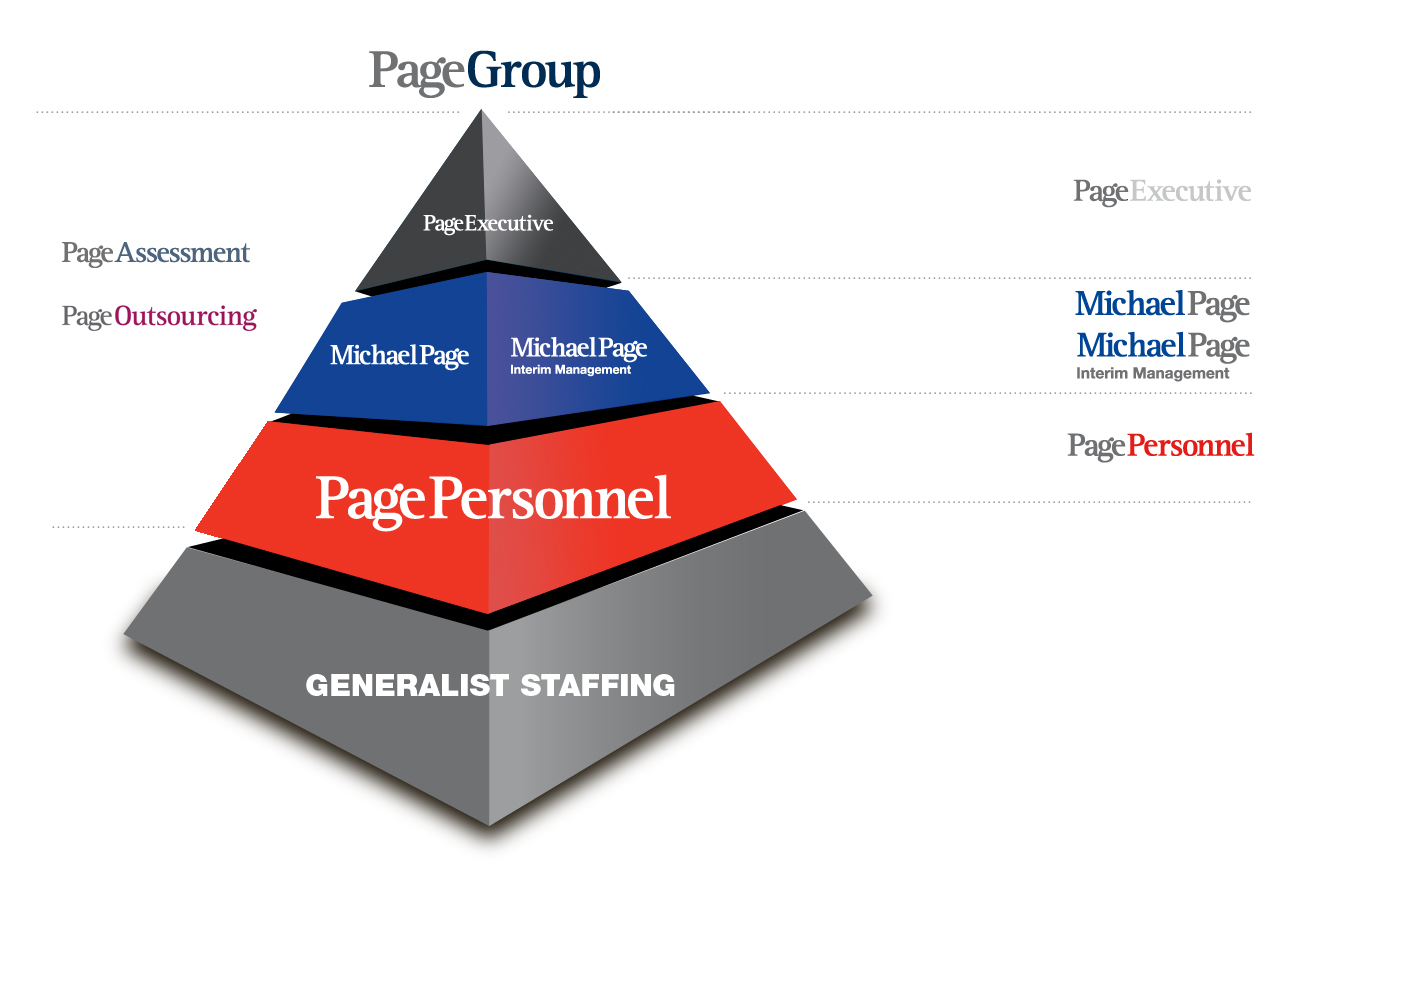 3 Michael Page Estudio de Remuneración 2012- Comercial & Marketing 4 MICHAEL PAGE INTERNATIONAL Michael Page es la consultora líder en reclutamiento especializado.